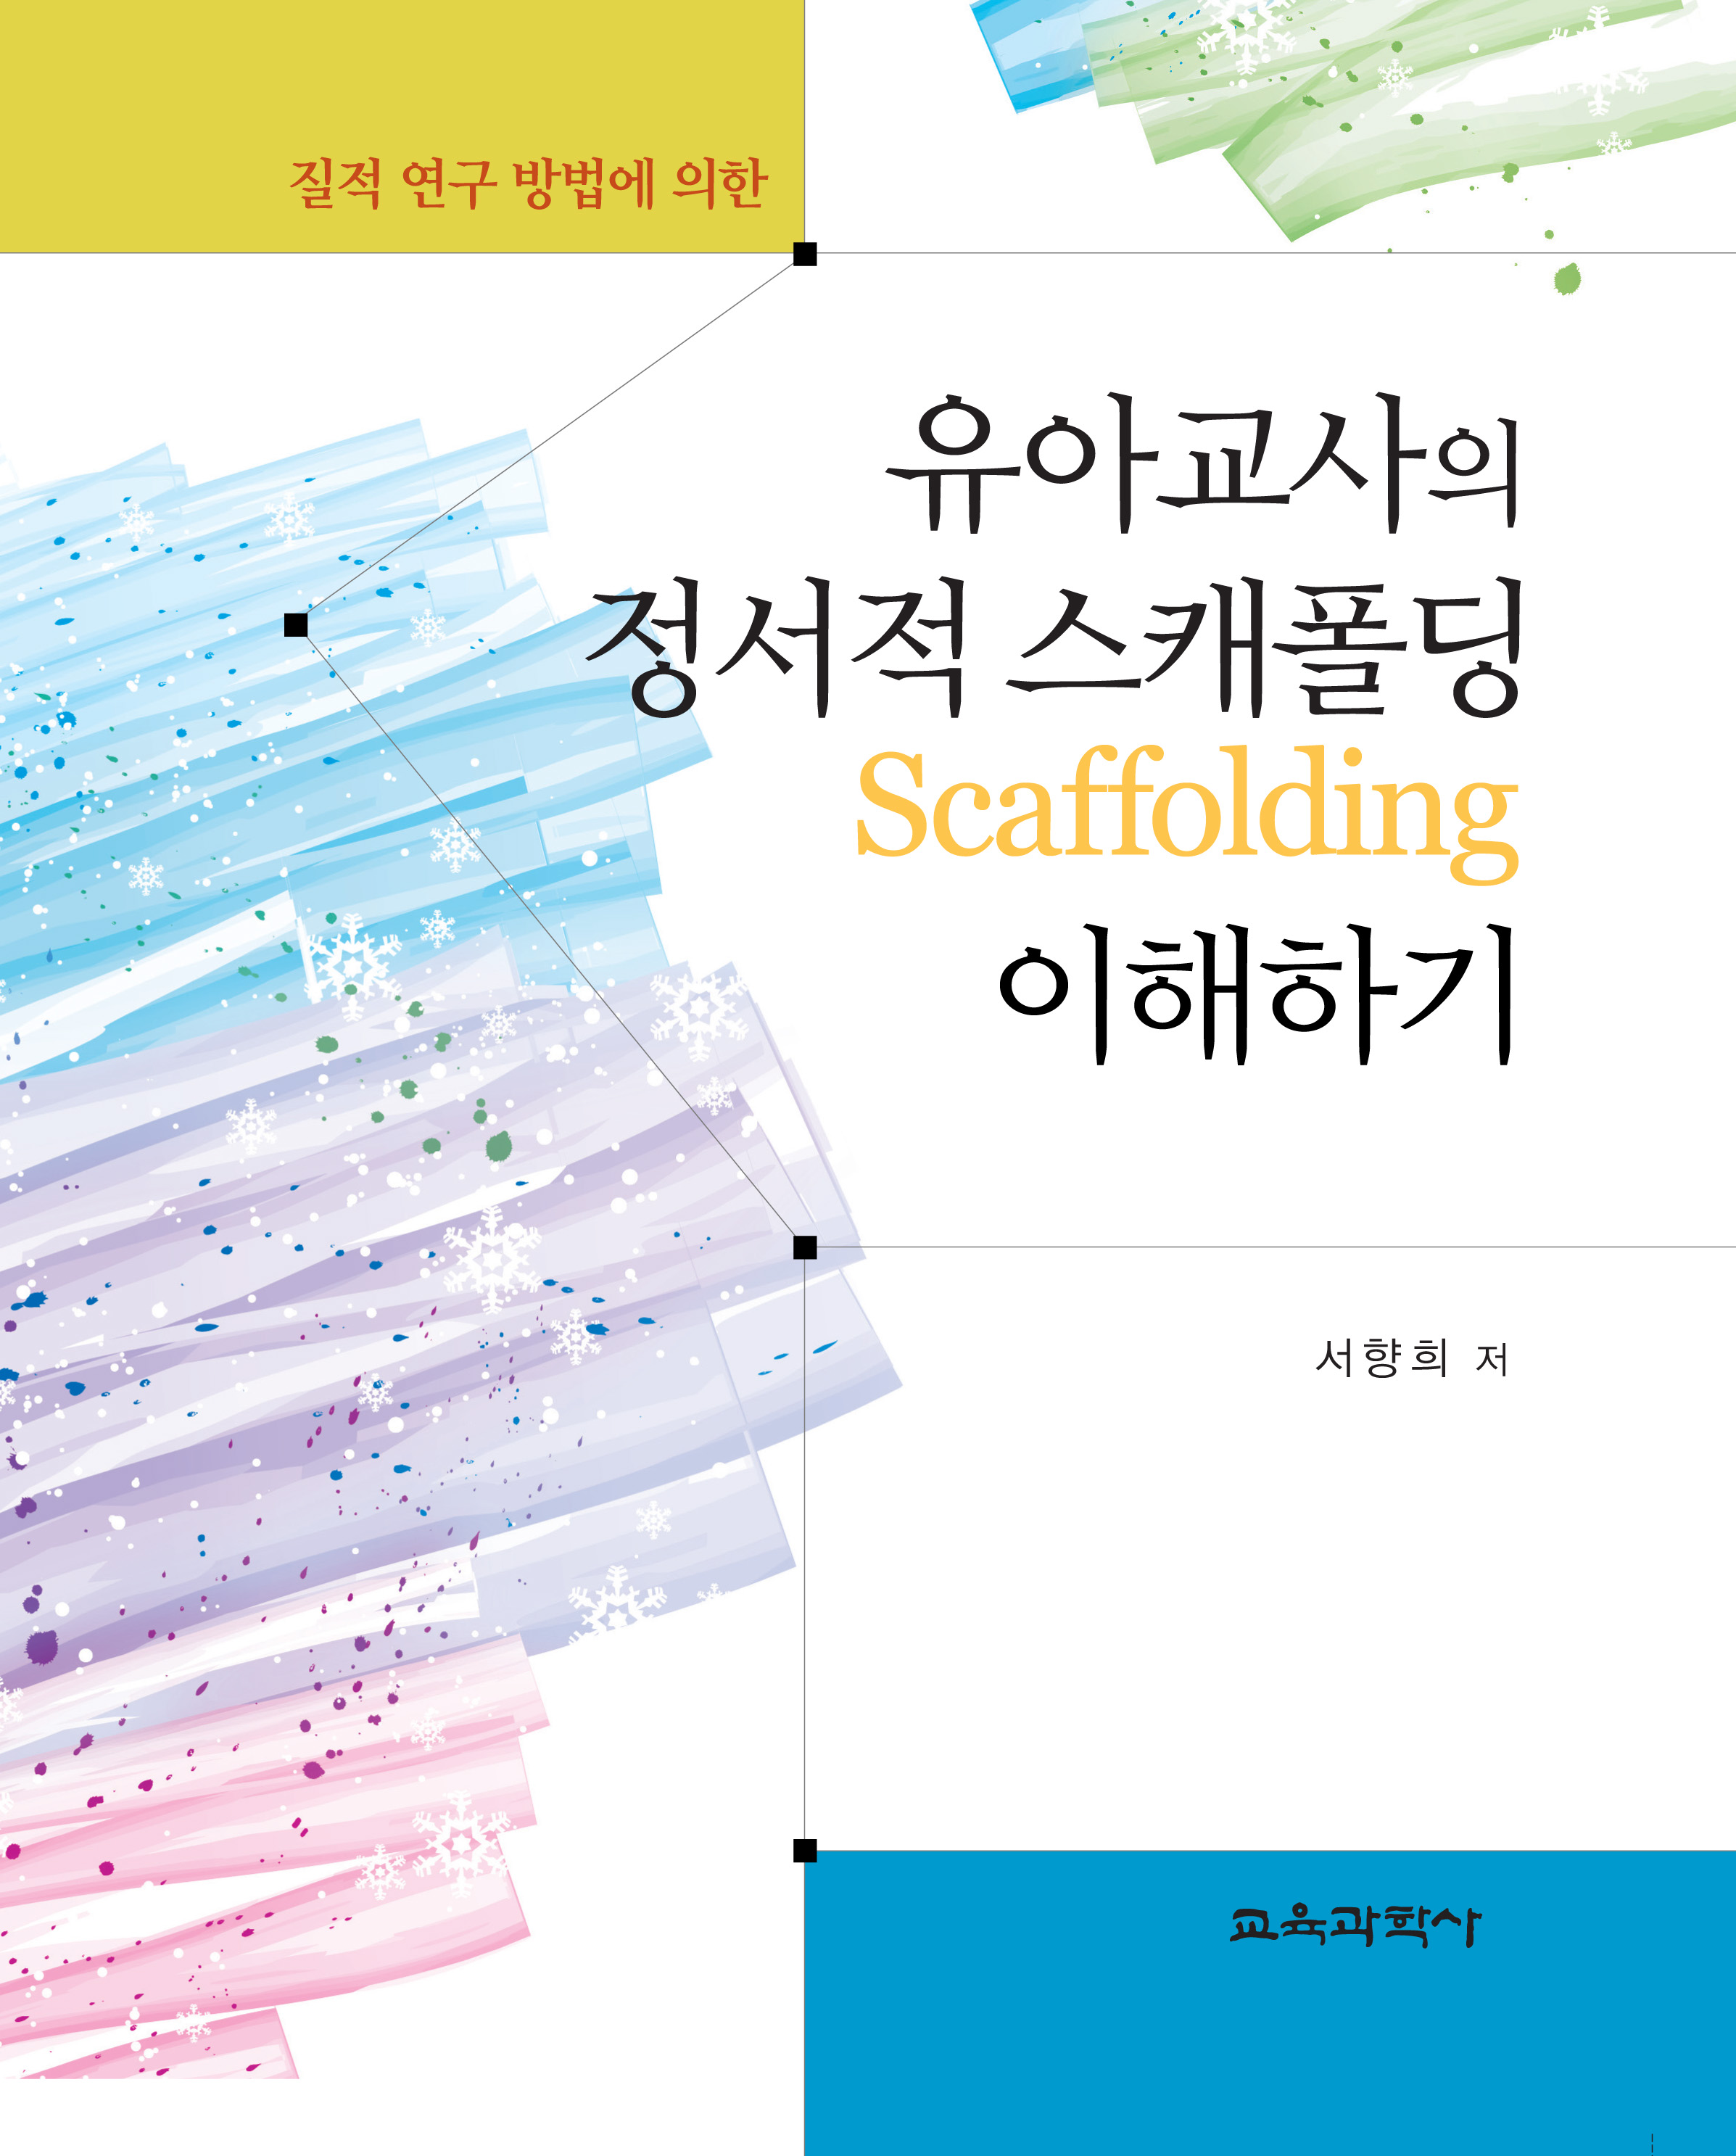 질적 연구 방법에 의한 유아교사의 정서적 스캐폴딩 Scaffolding 이해하기(2014년 문광부우수학술도서)